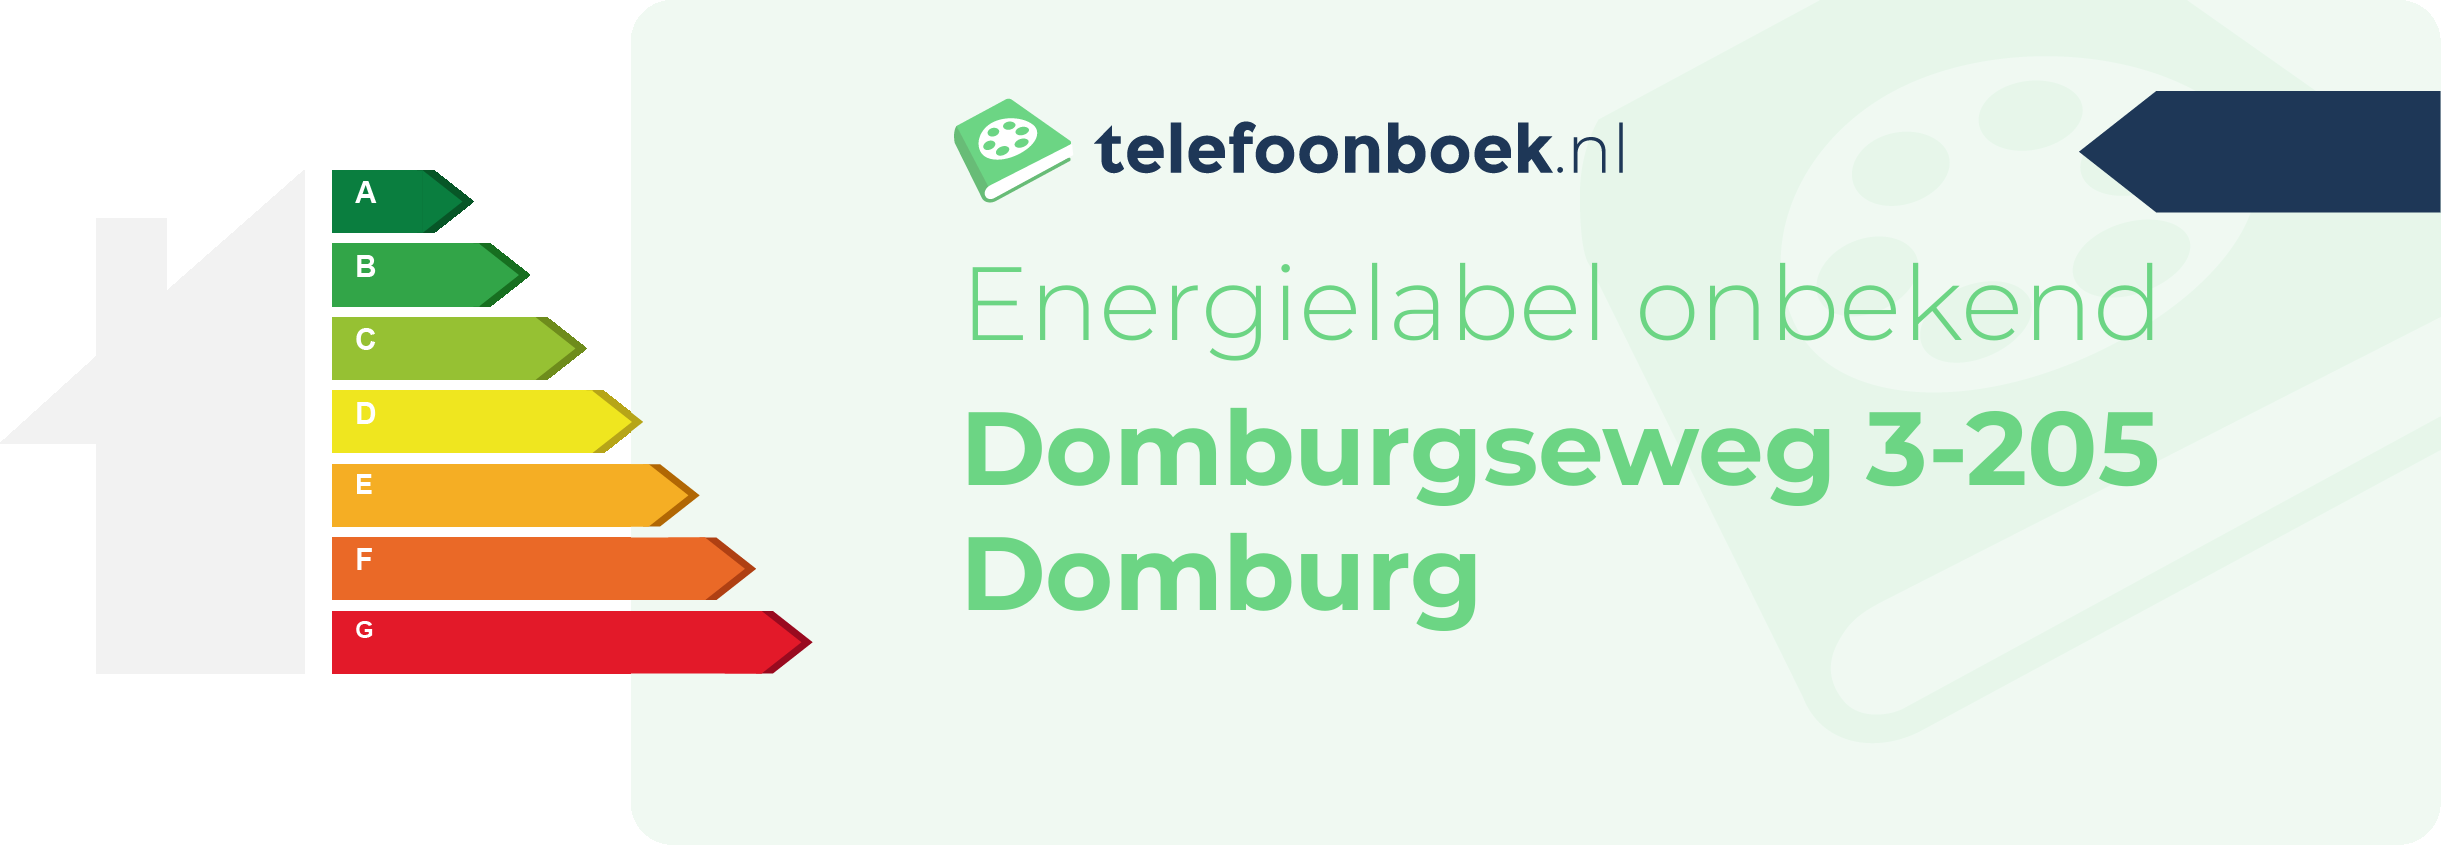 Energielabel Domburgseweg 3-205 Domburg